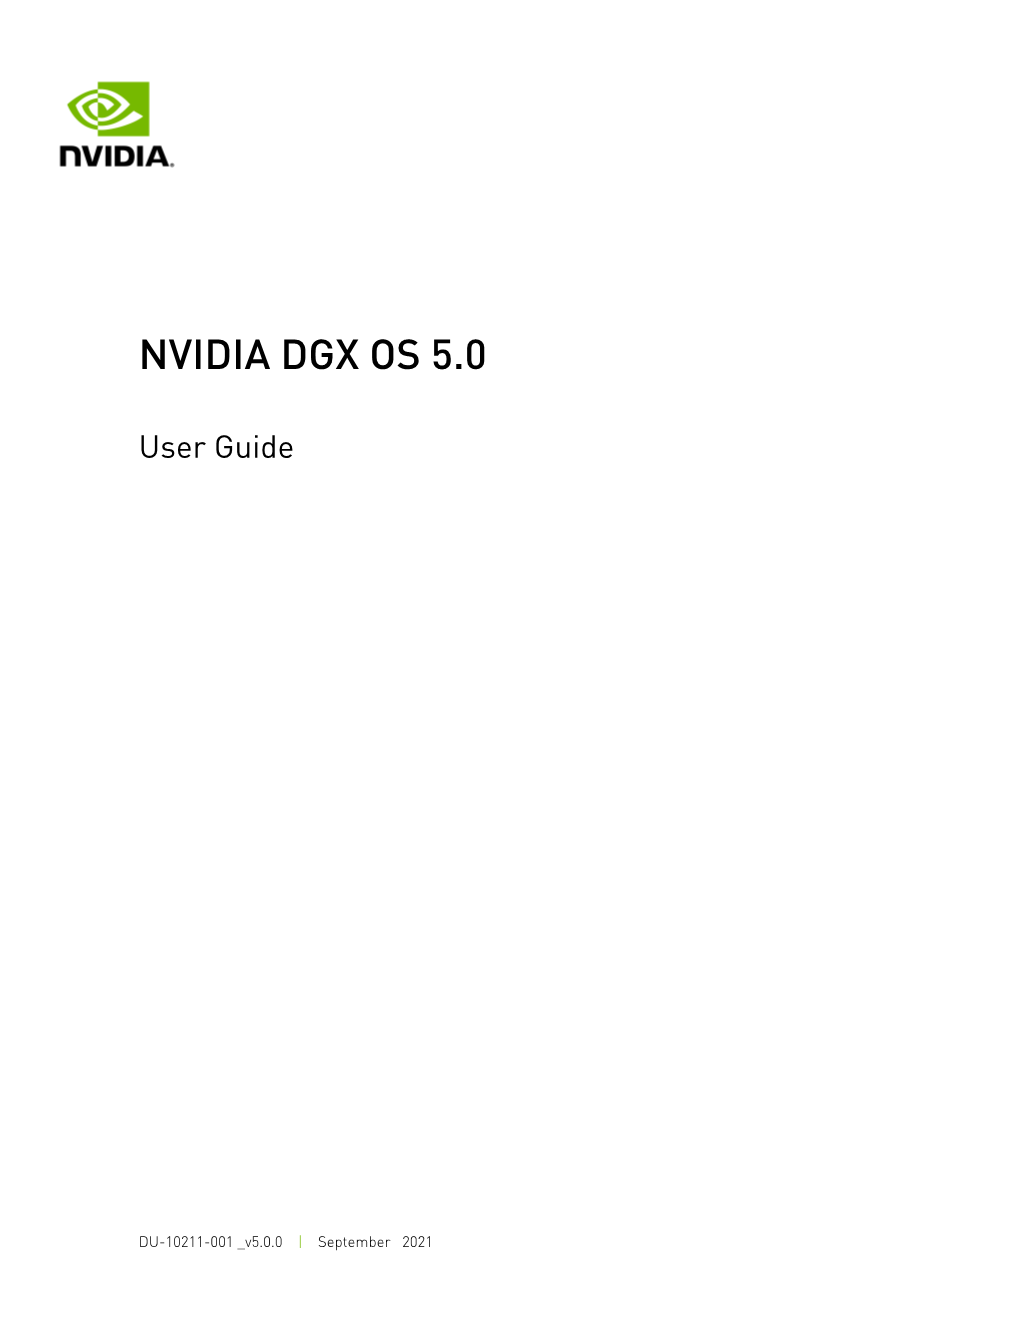 Nvidia Dgx Os 5.0